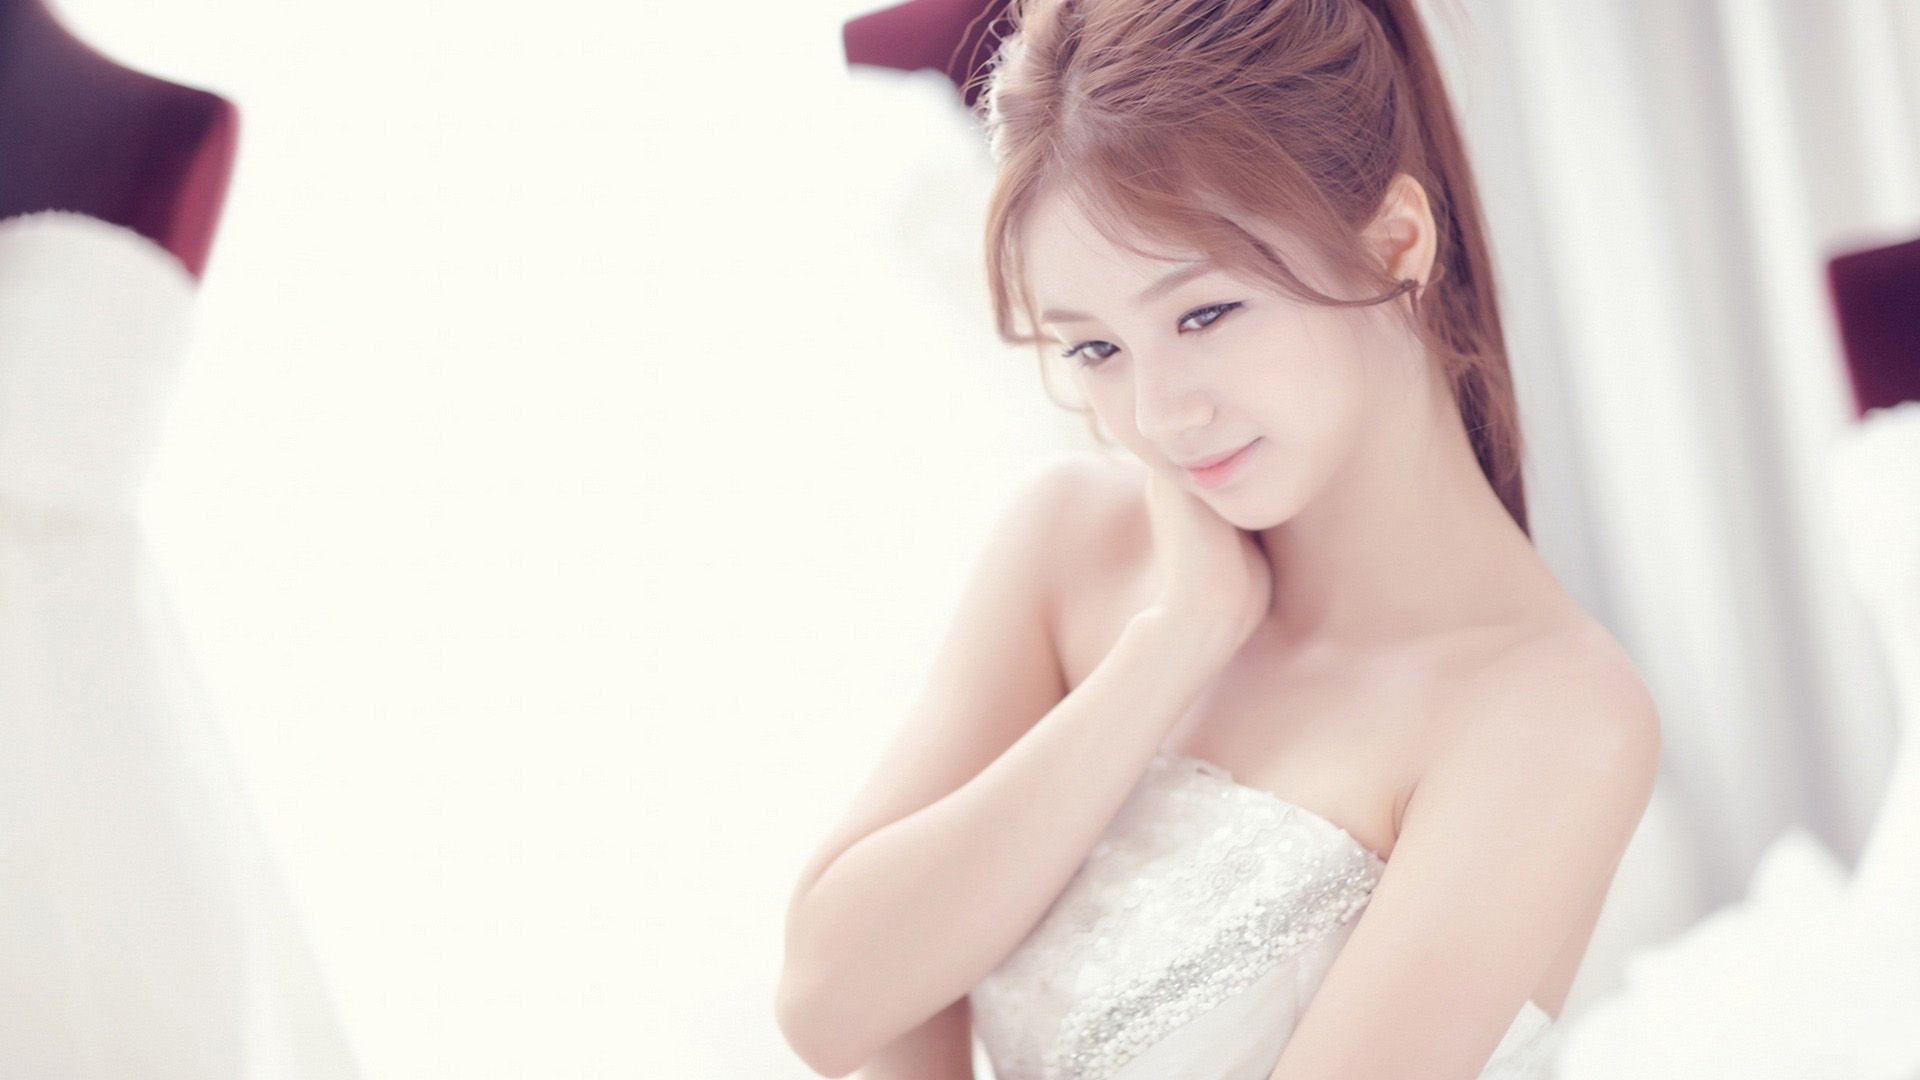 Women Asian Hyeri Brunette K Pop Singer Korean Diffused Strapless Dress Smiling Eyeliner 1920x1080